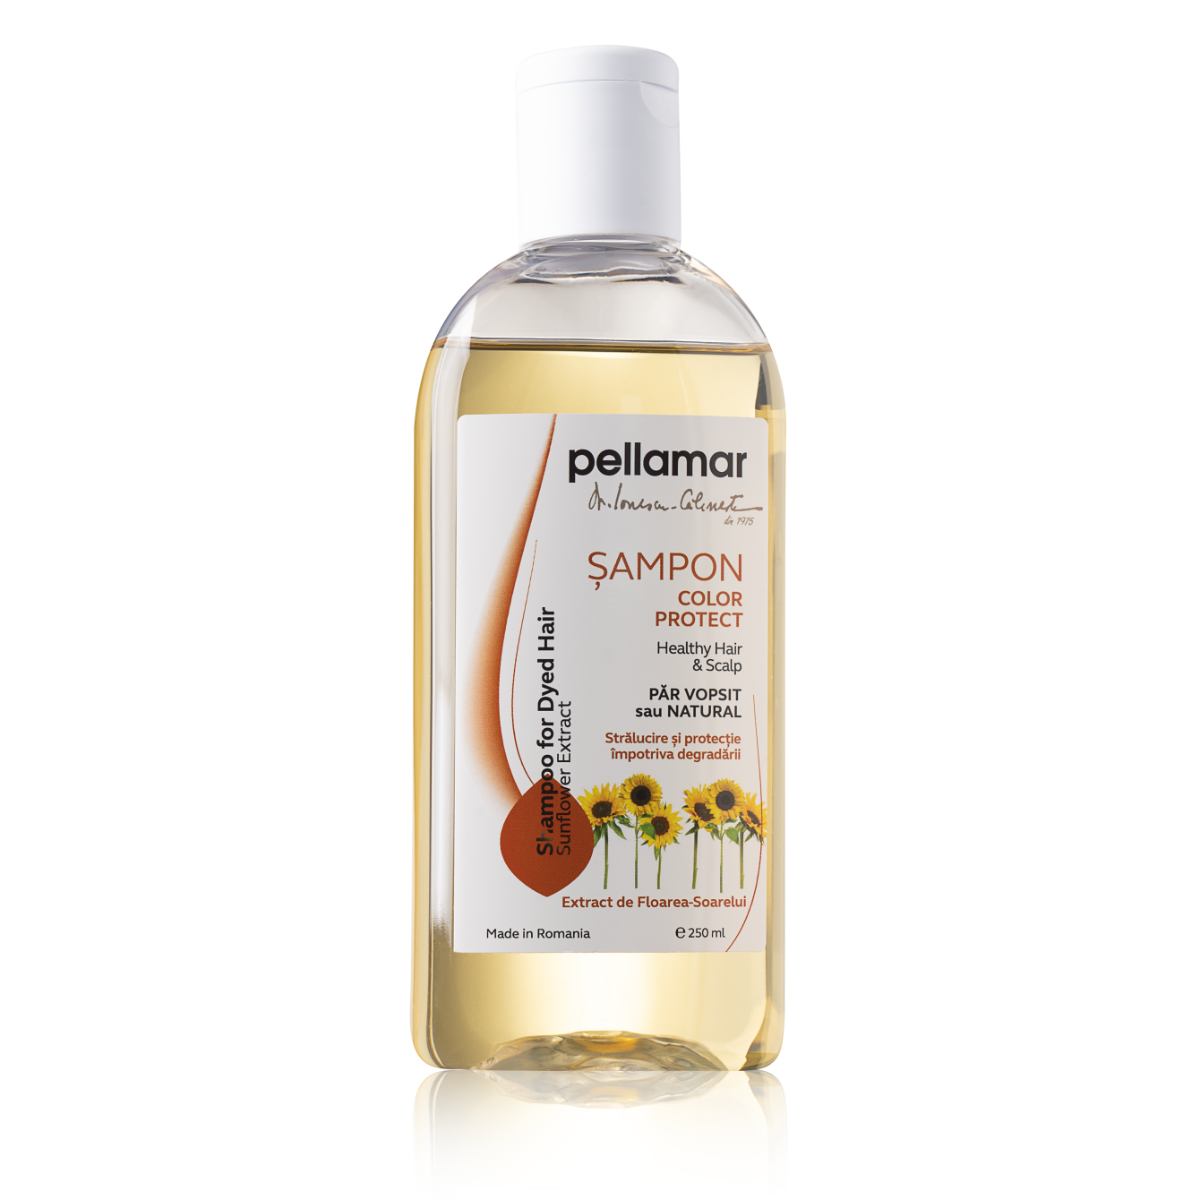 Sampon cu extract de floarea-soarelui pentru par vopsit Beauty Hair, 250 ml, Pellamar